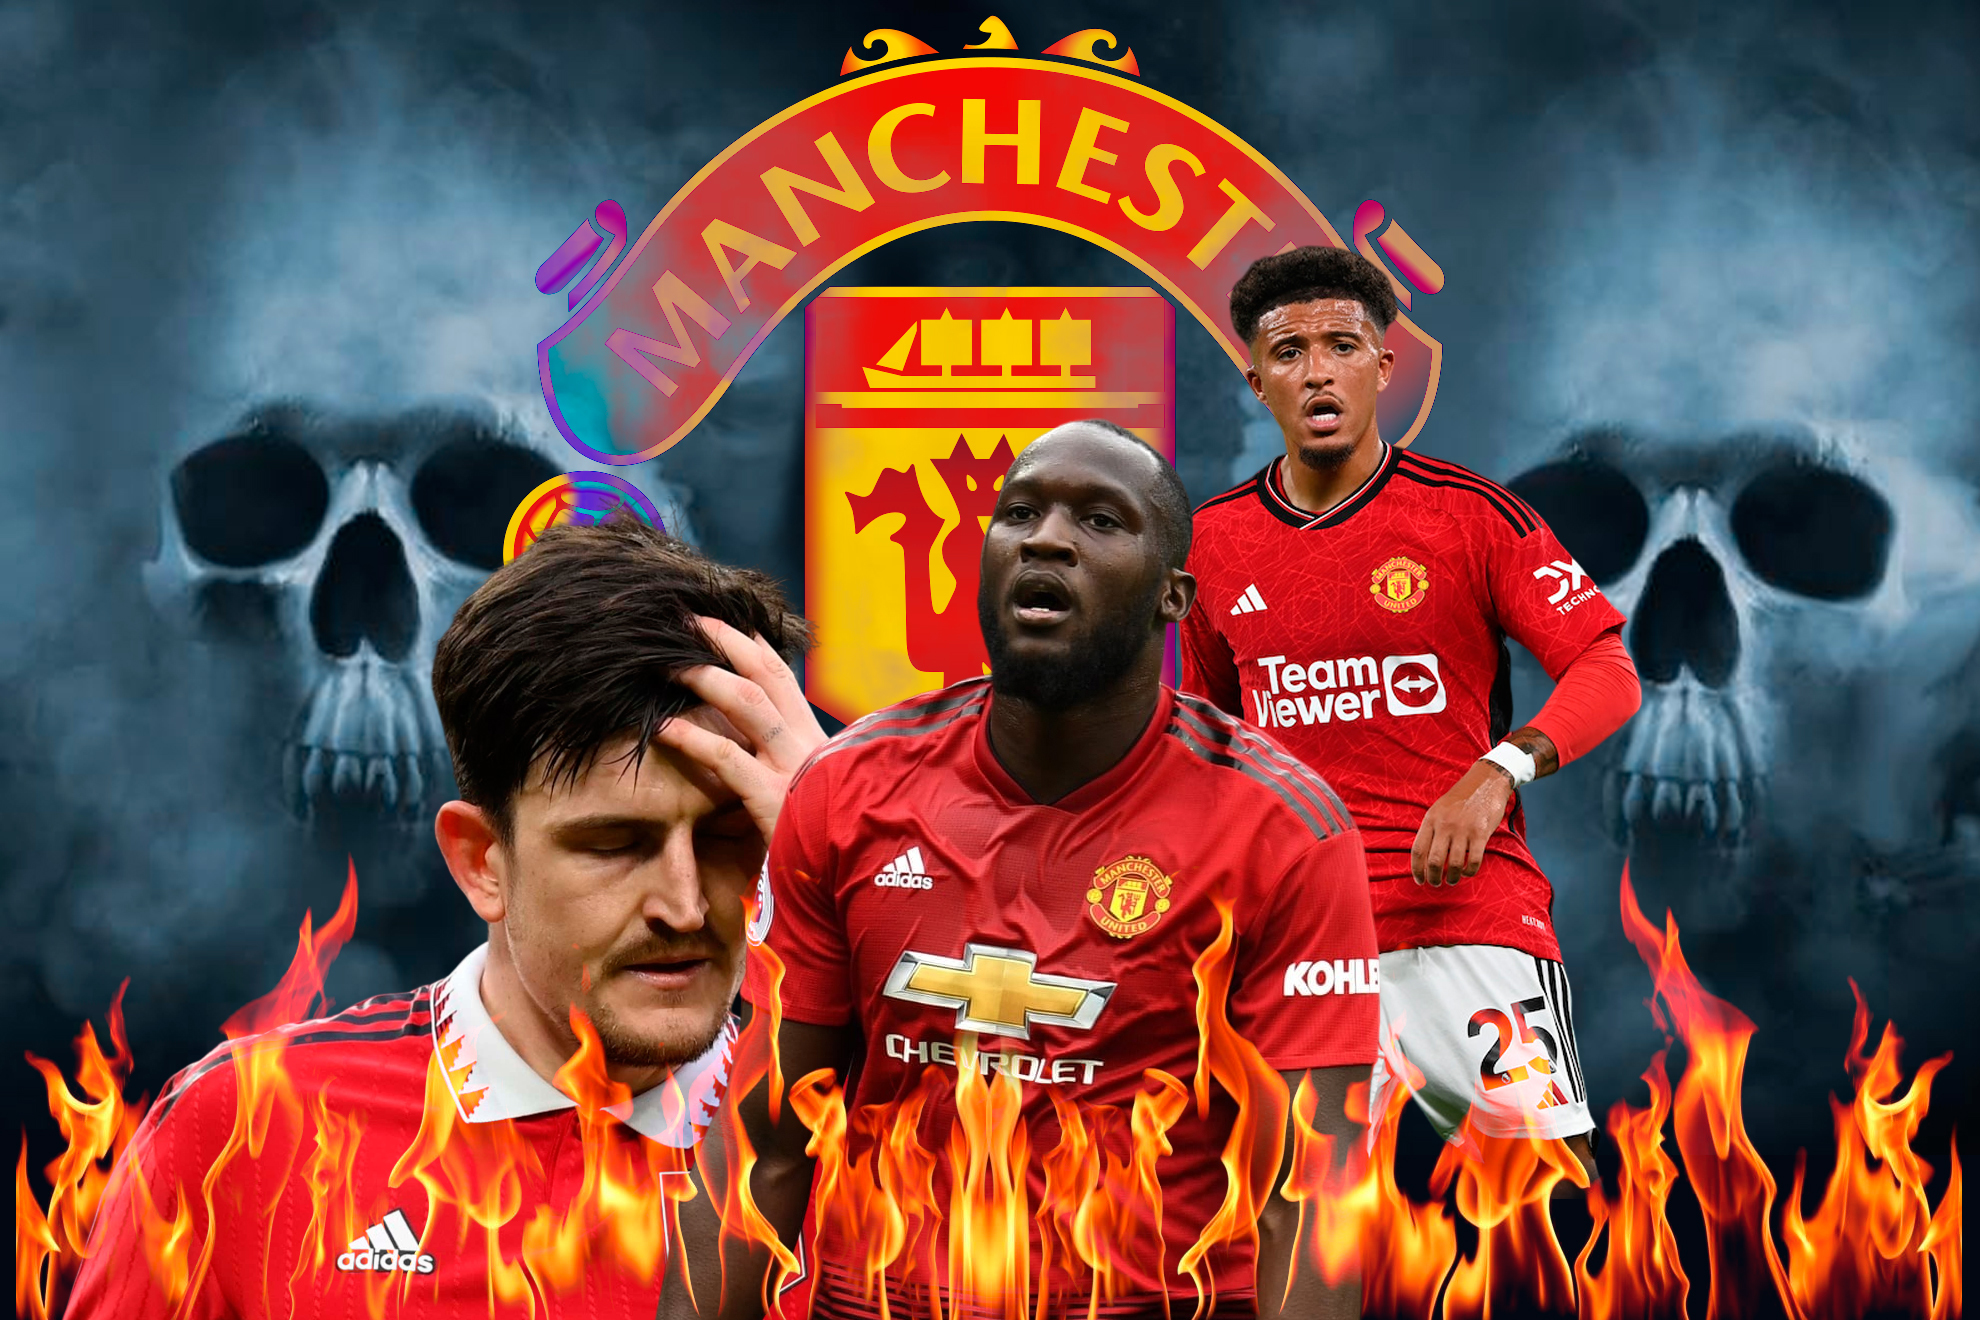 El Manchester United, una década de desastres y malos fichajes: Pogba, Lukaku, Sancho, Antony...